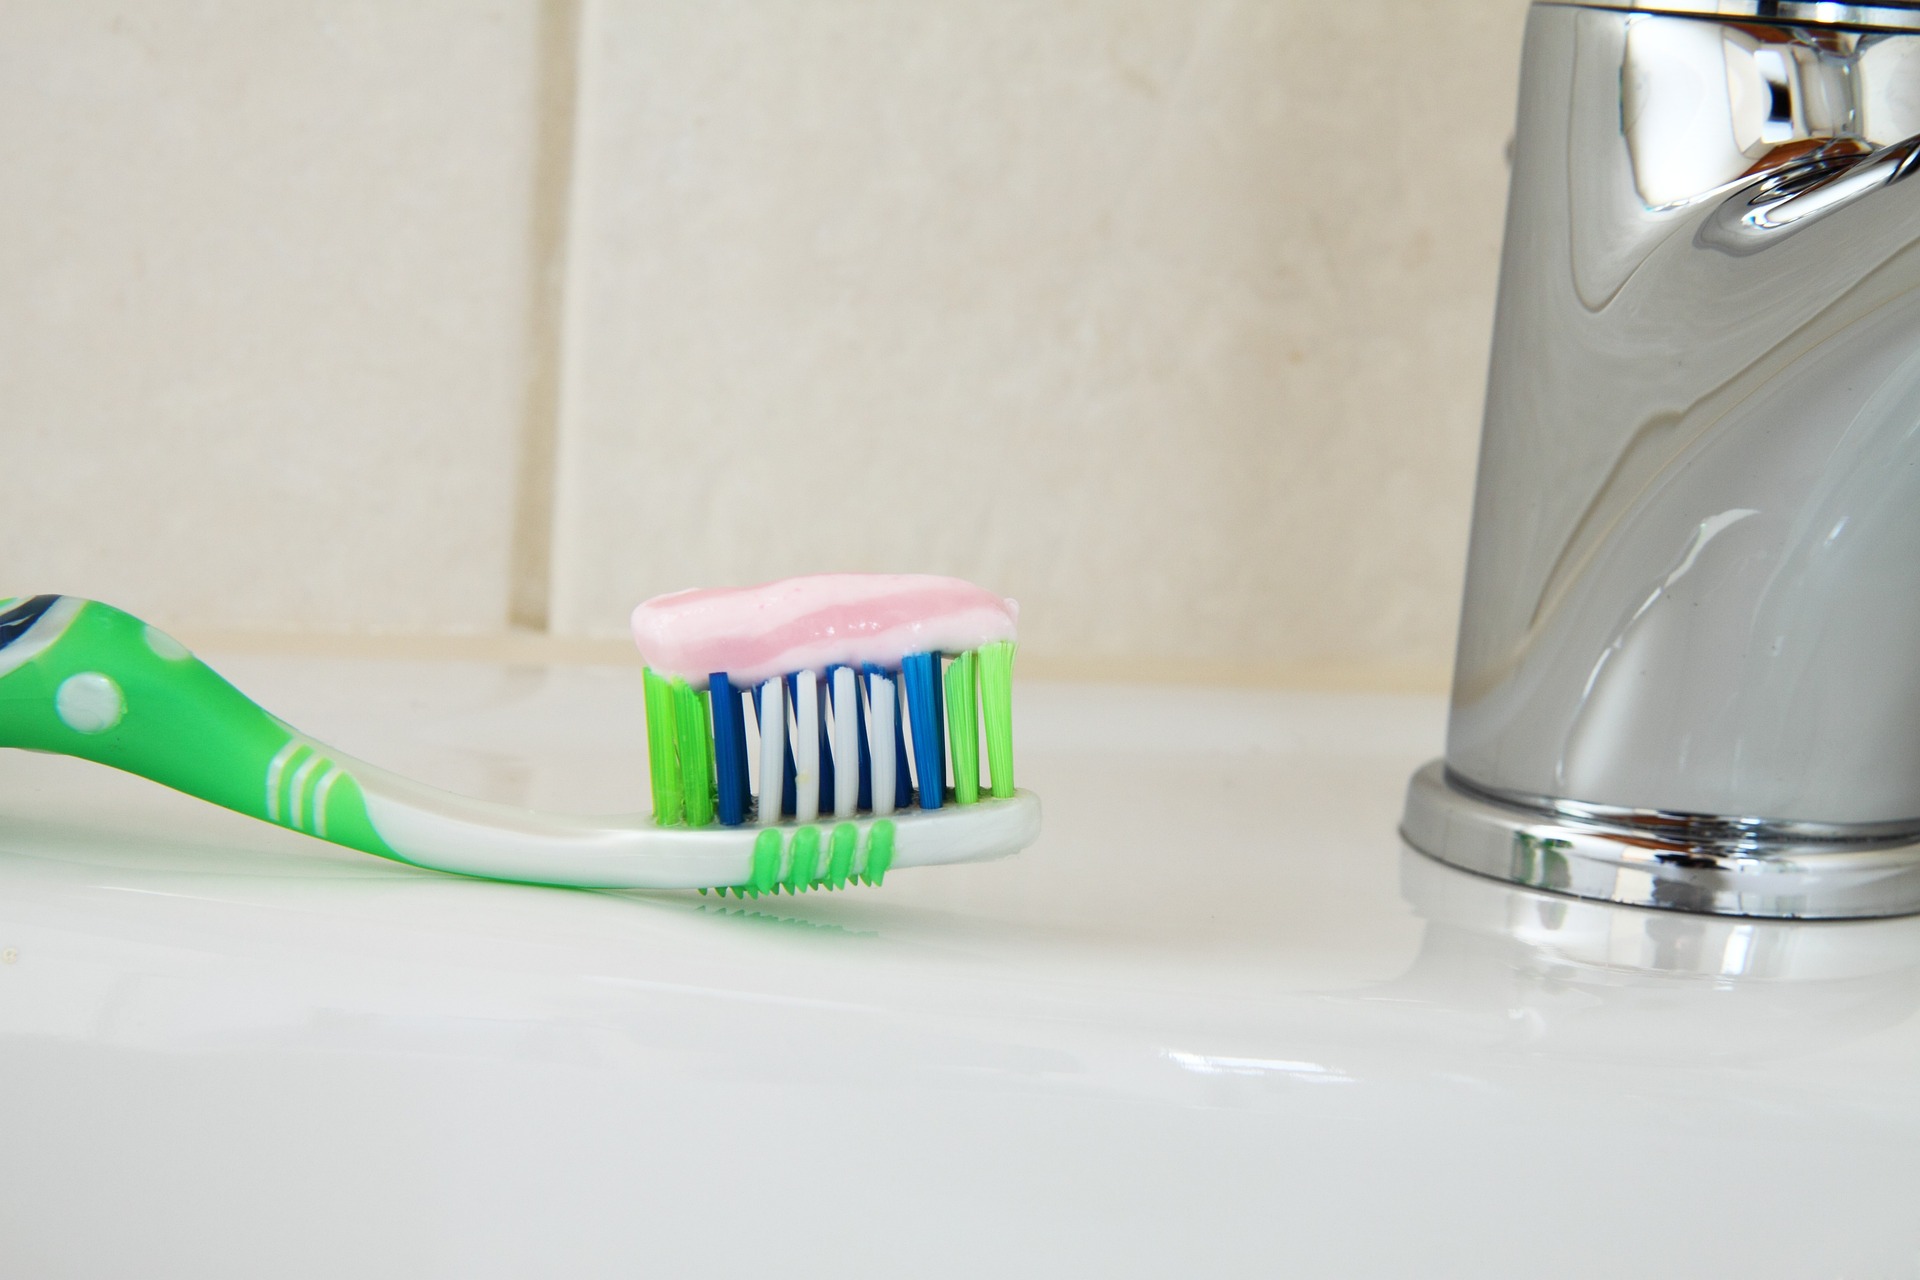 Προληπτική ανάκληση παιδικής οδοντόβουρτσας - Κίνδυνος κατάποσης του καπακιού